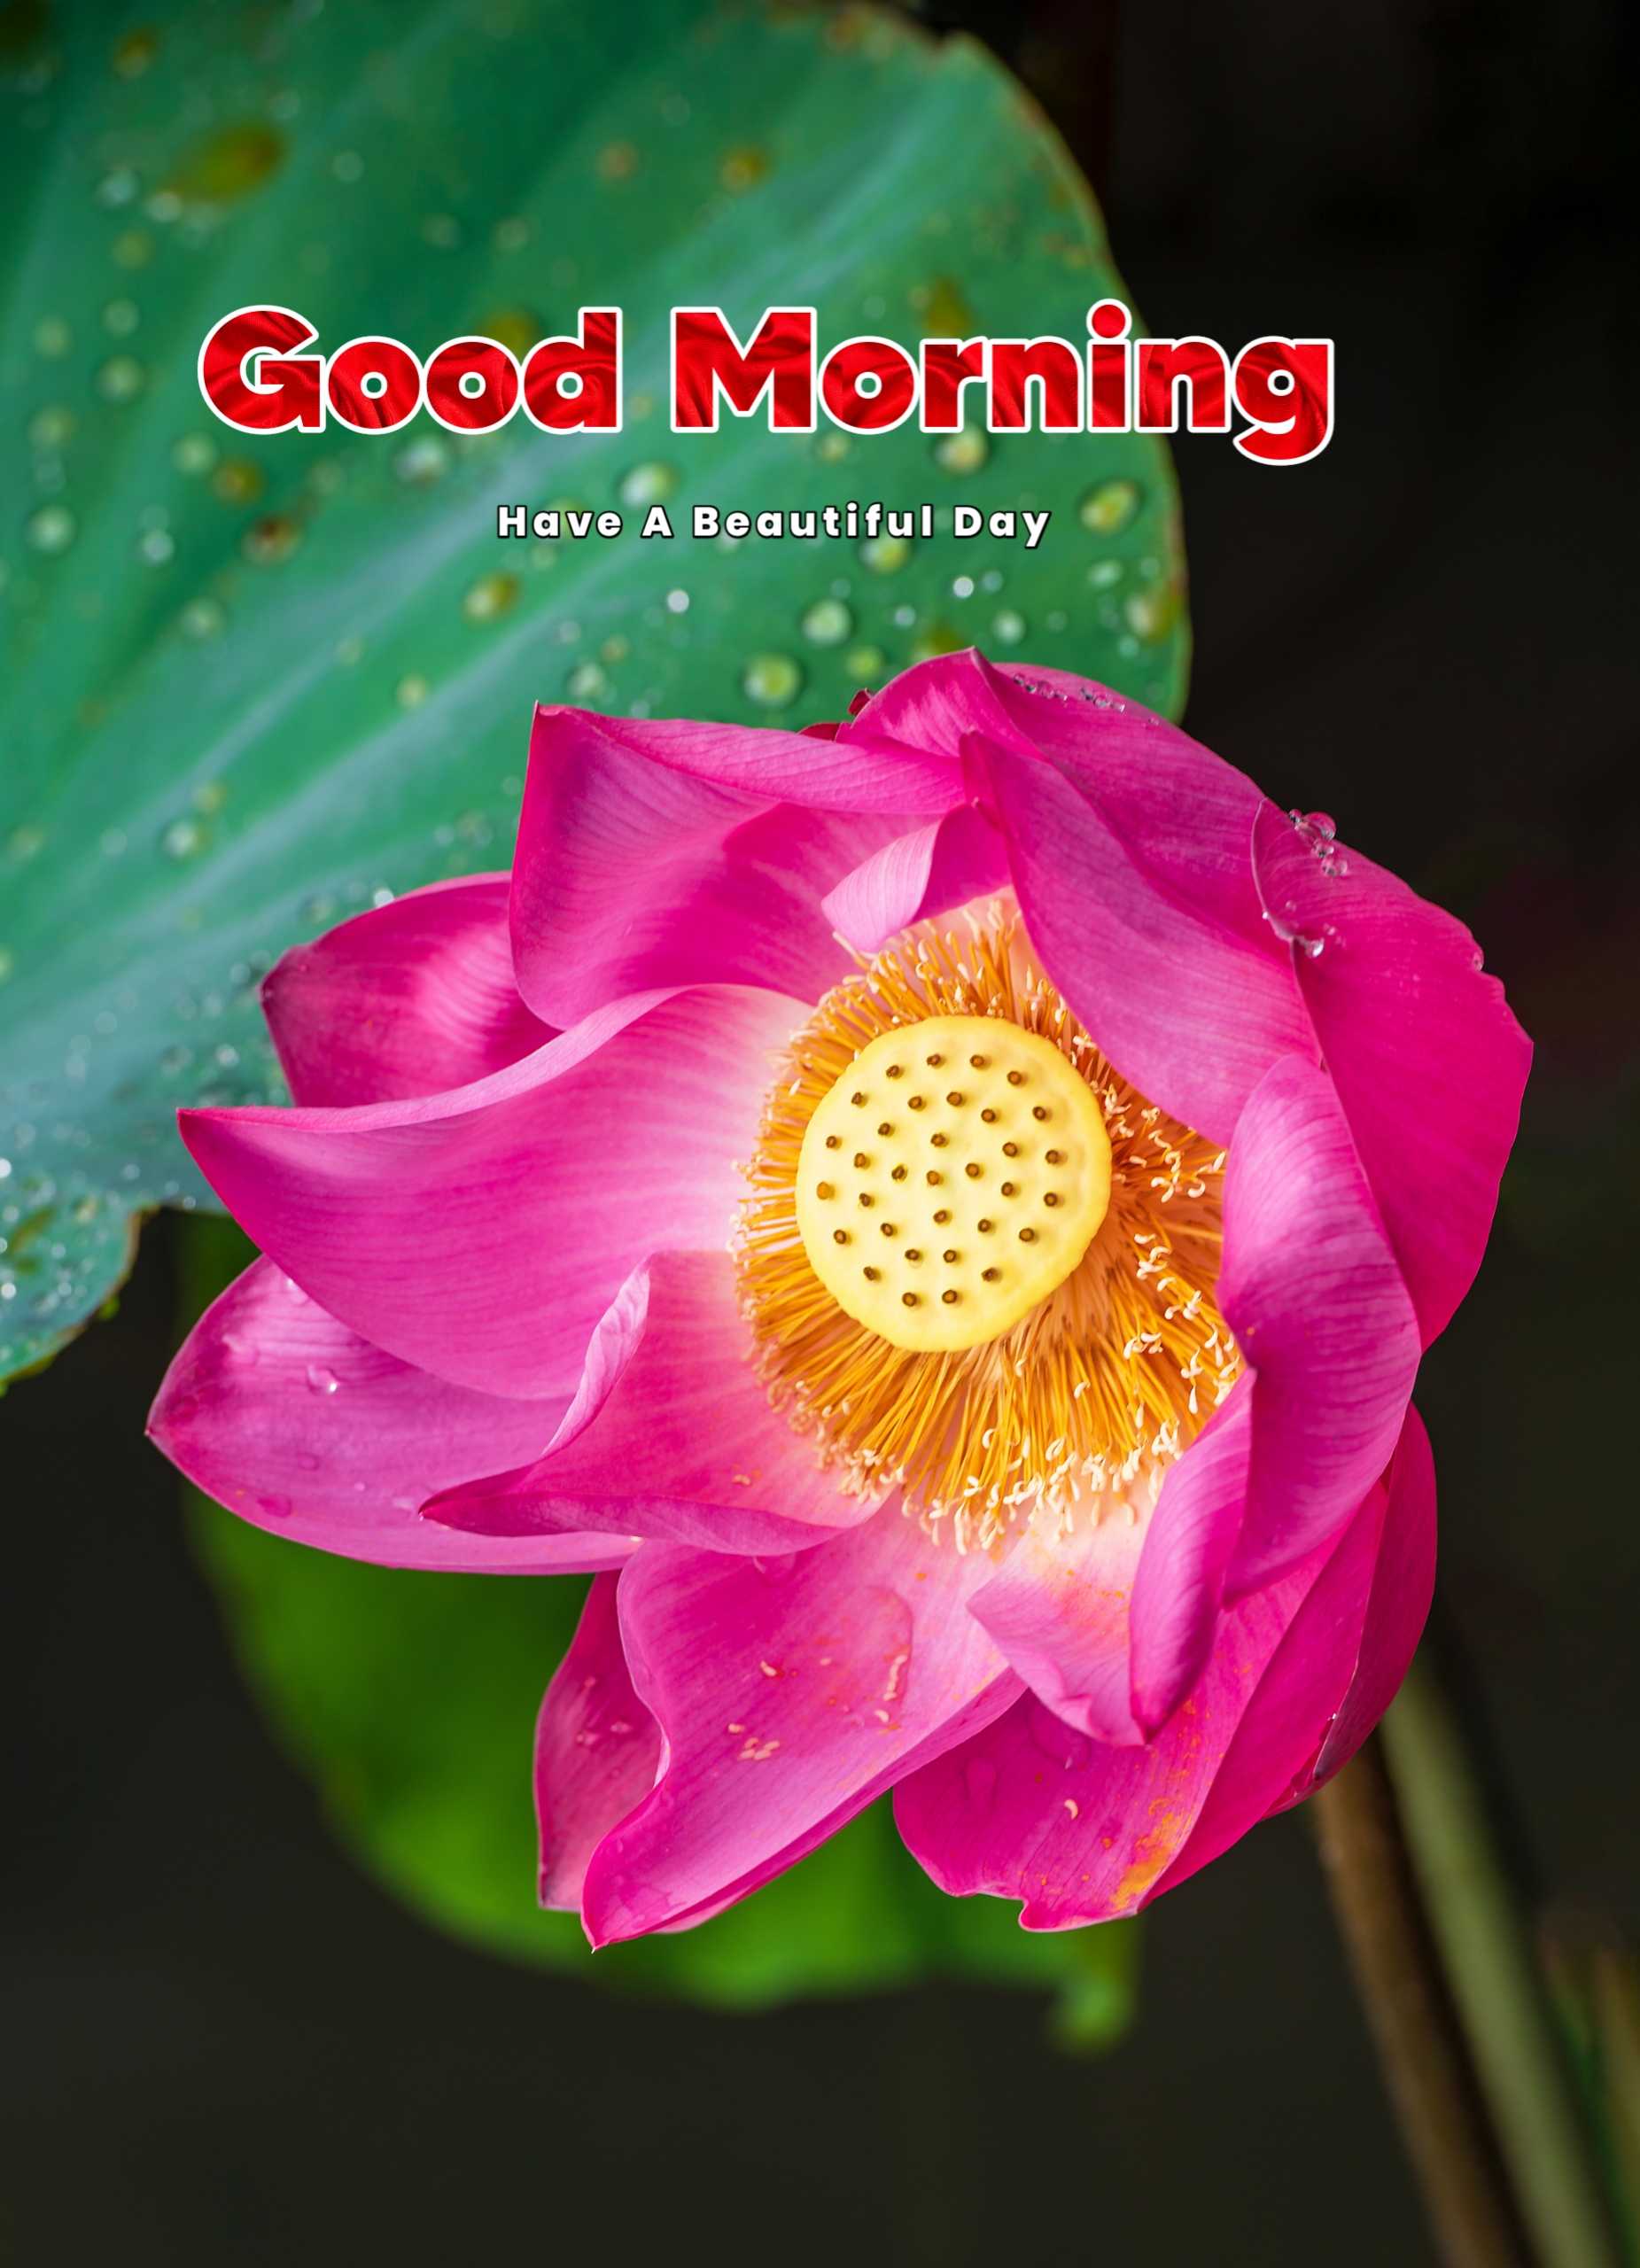 Amazing Red Flower Good Morning Image Photo 